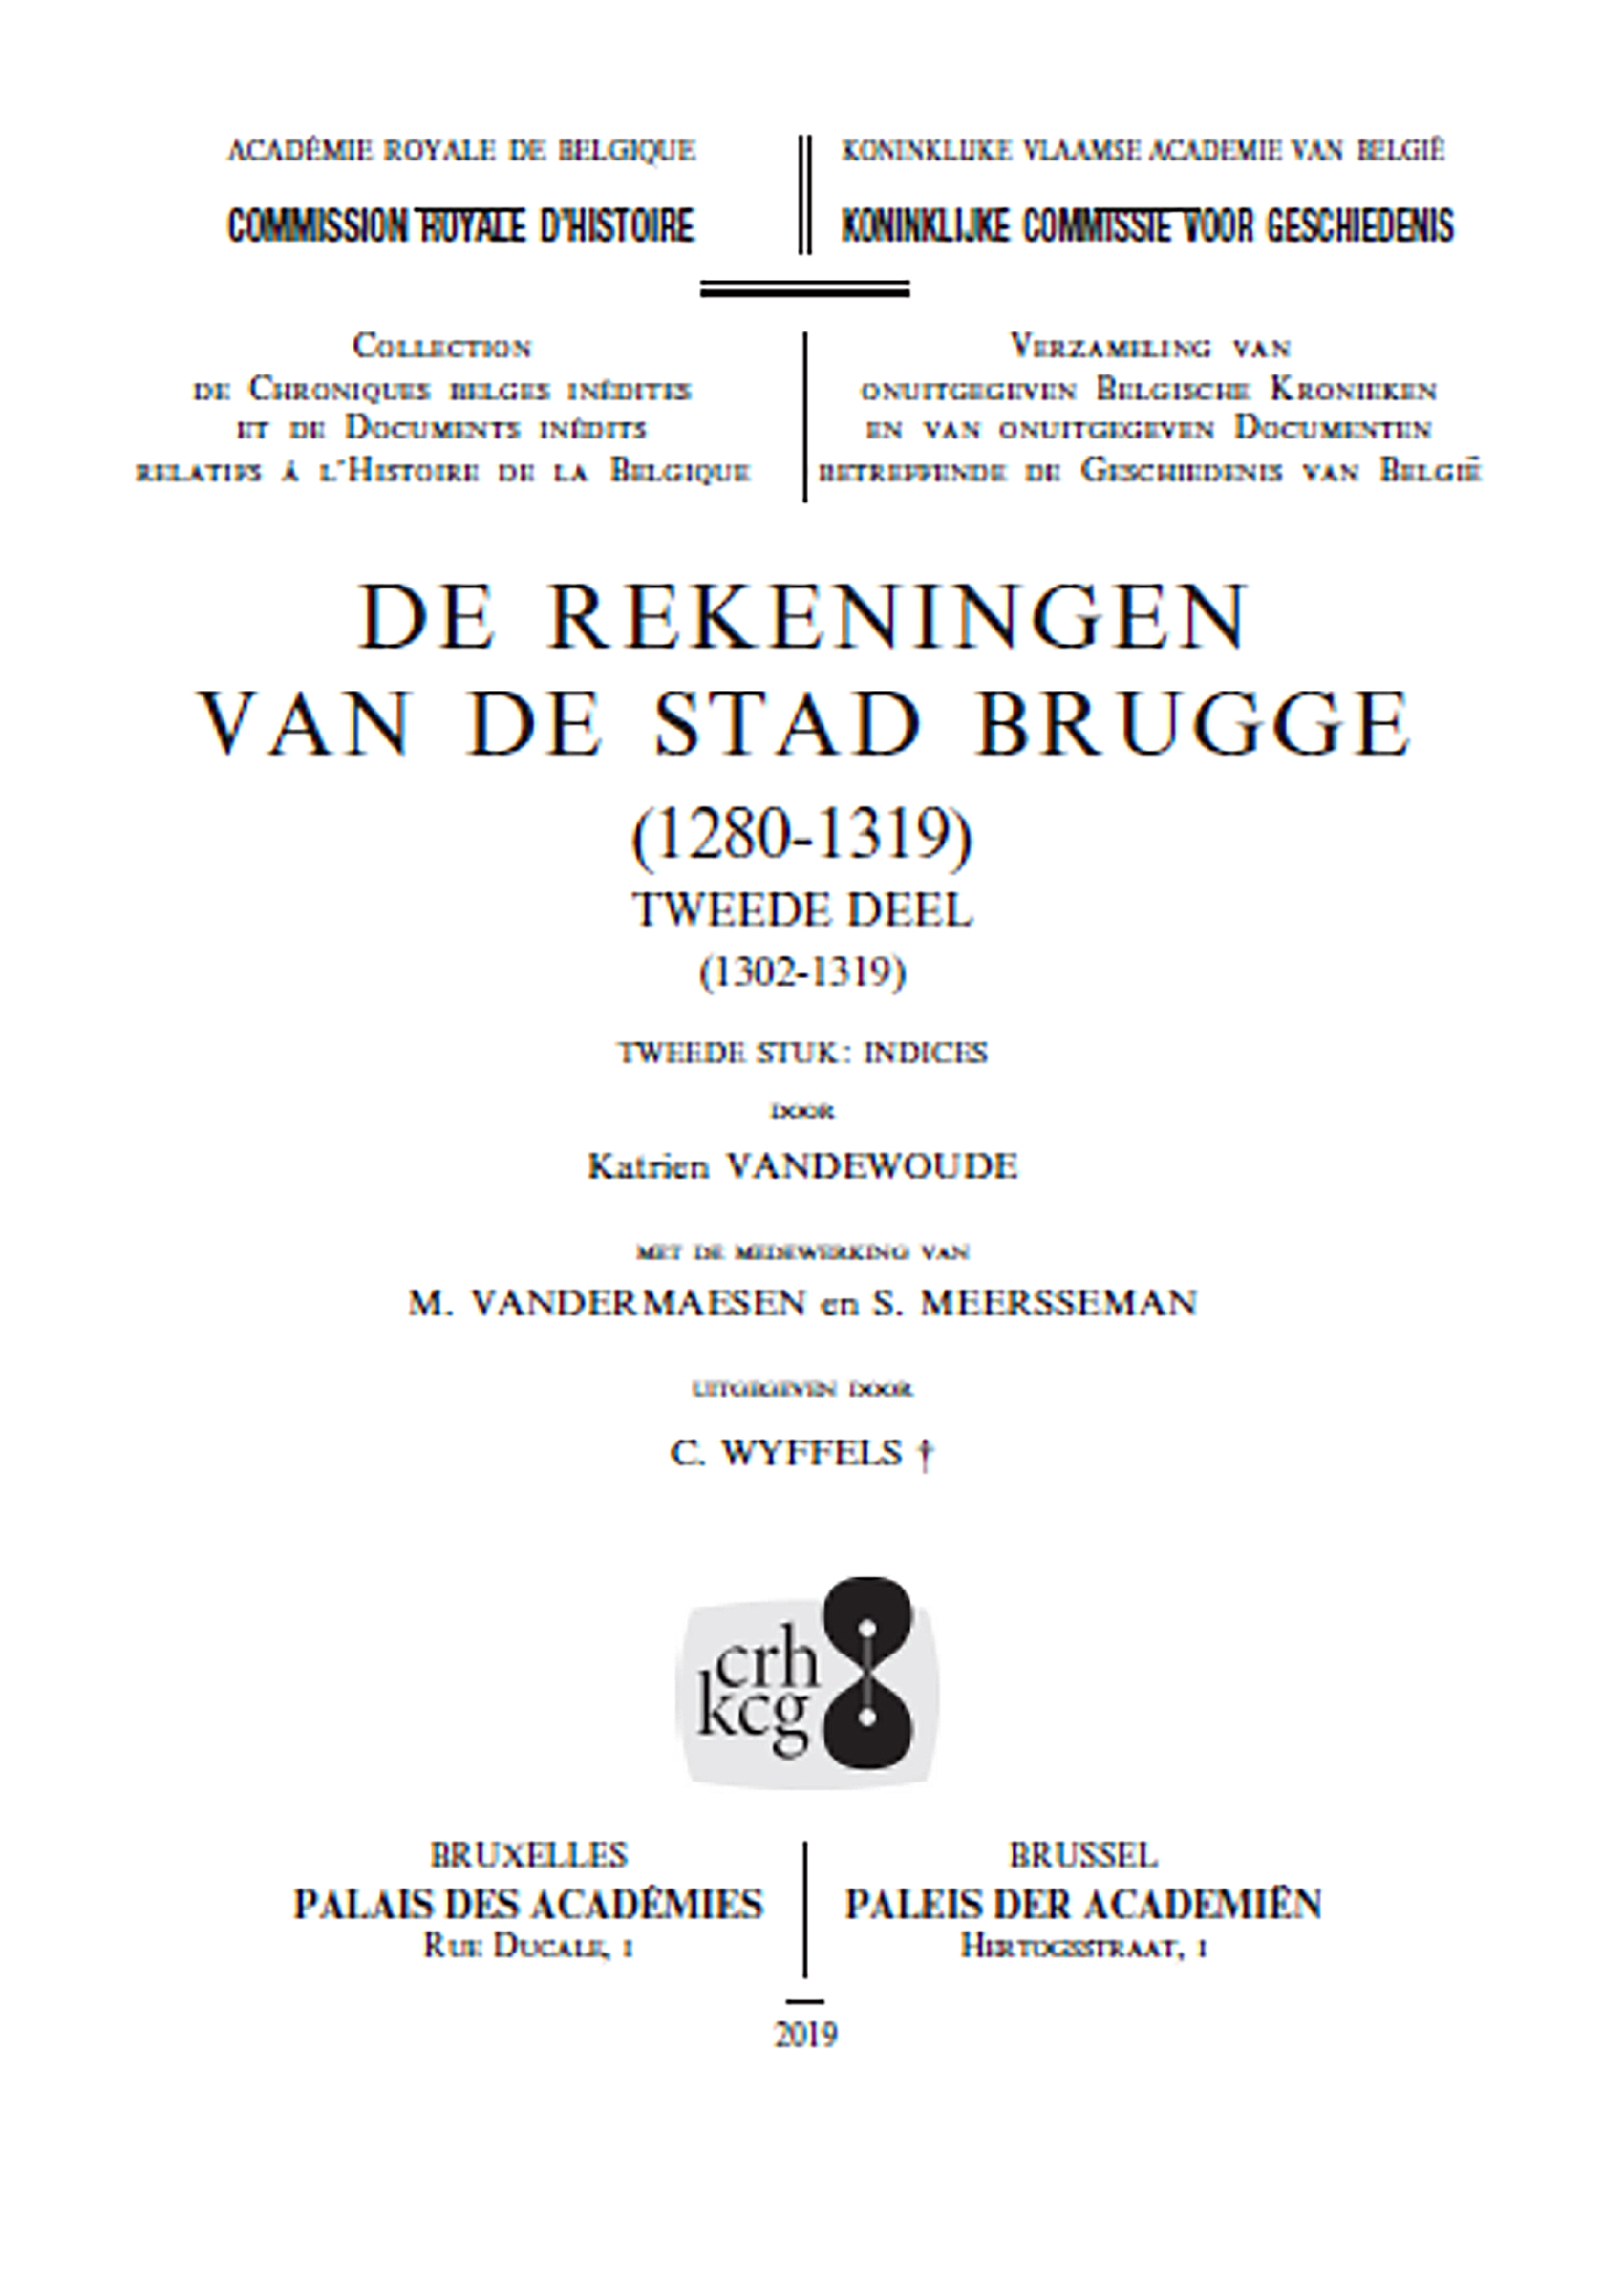 DE REKENINGEN VAN DE STAD BRUGGE (1280-1319) - DEEL 2, DERDE STUK (2020) (kcg)